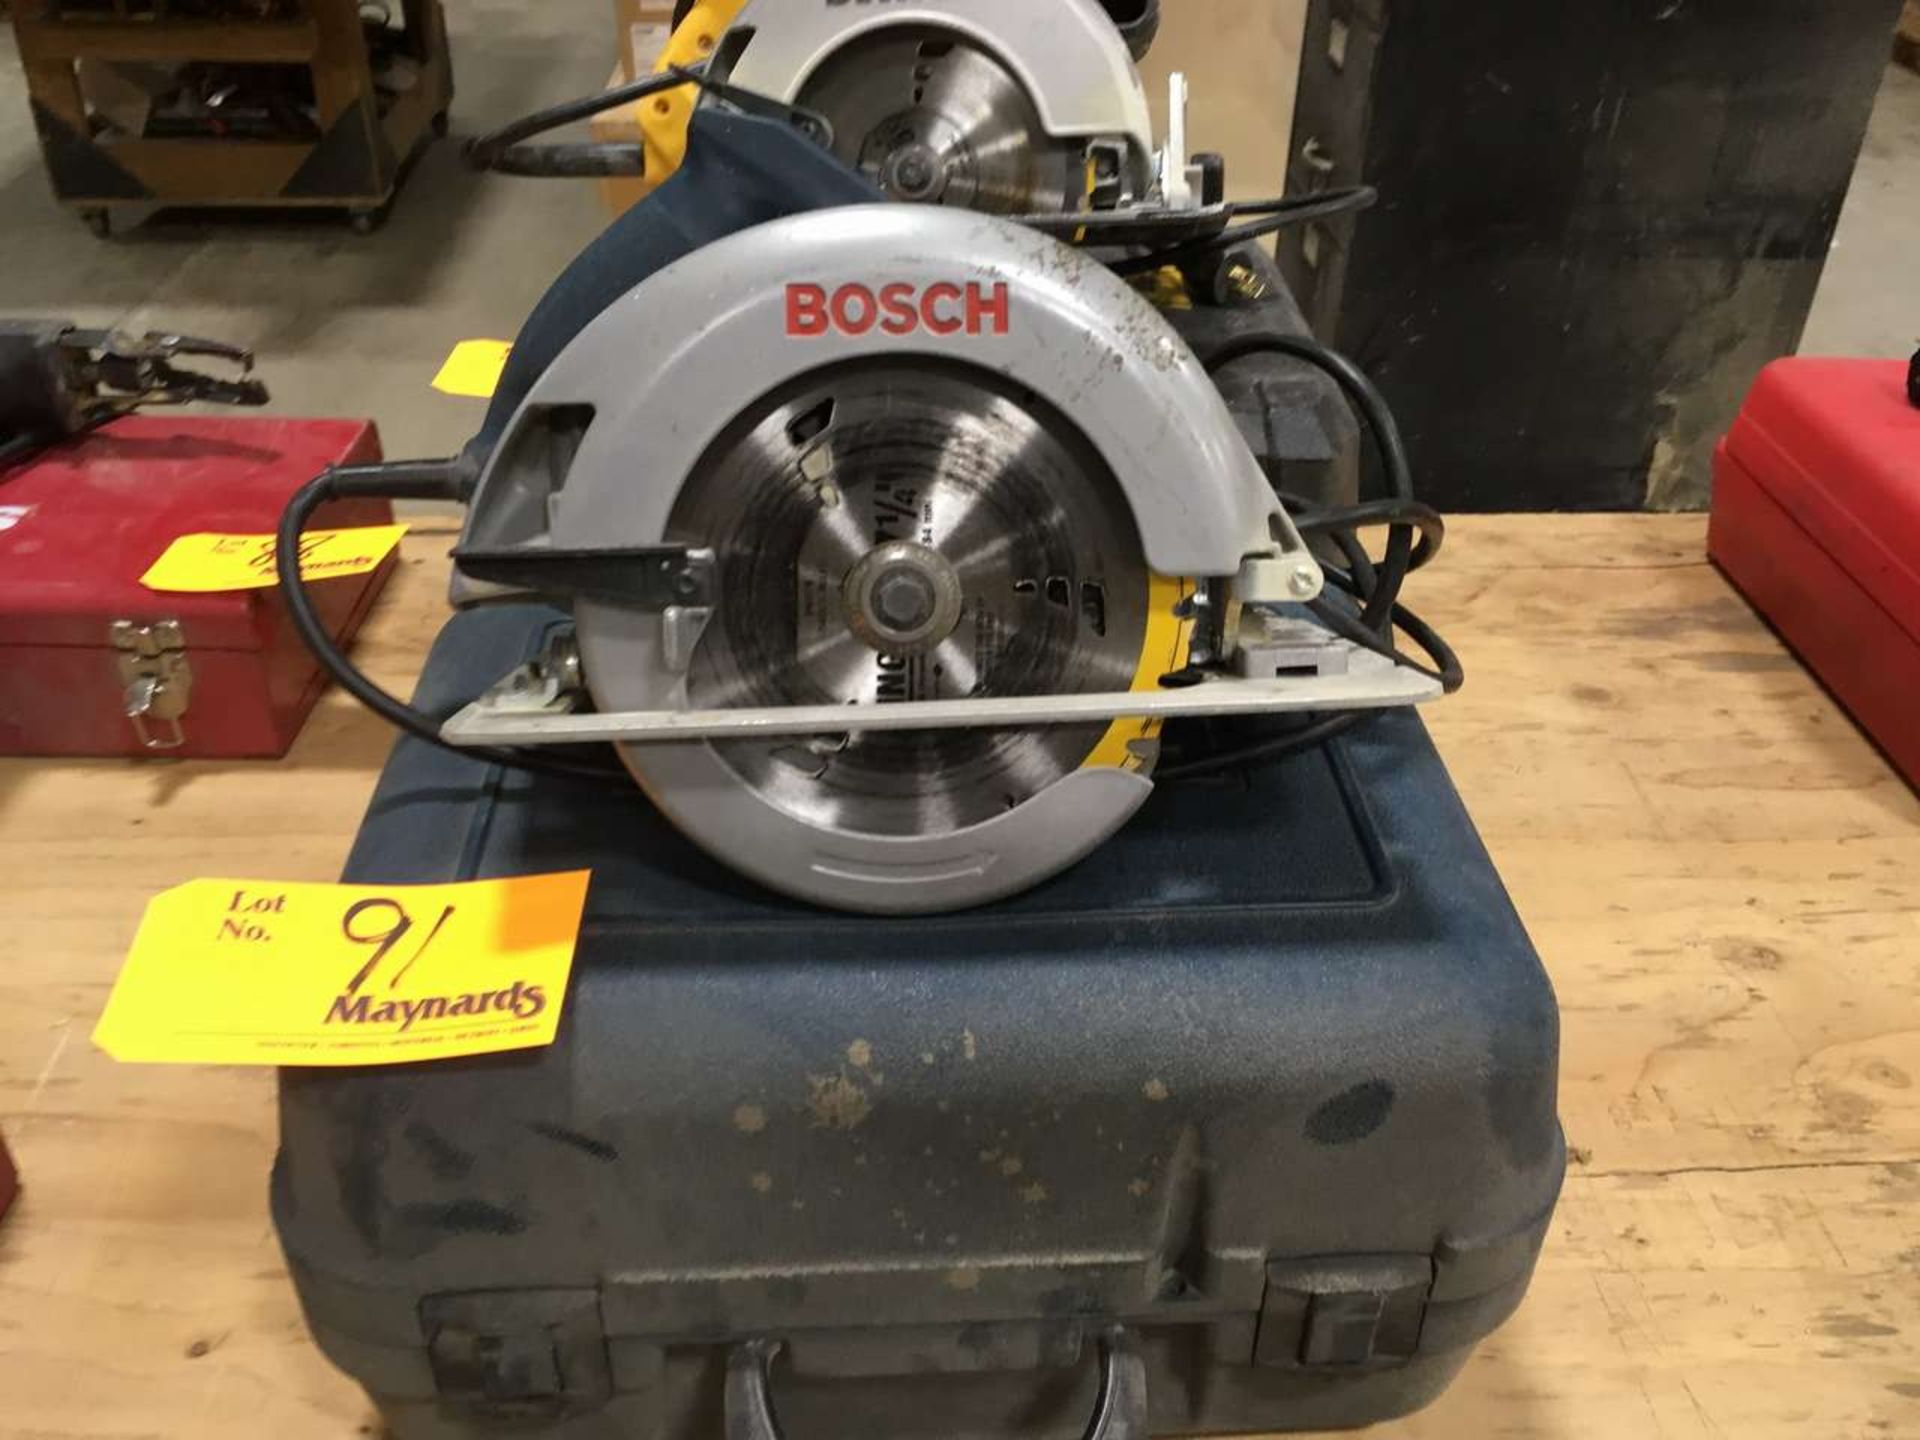 Bosh 1658 Electric 7-1/4''(184mm) Circular Saw